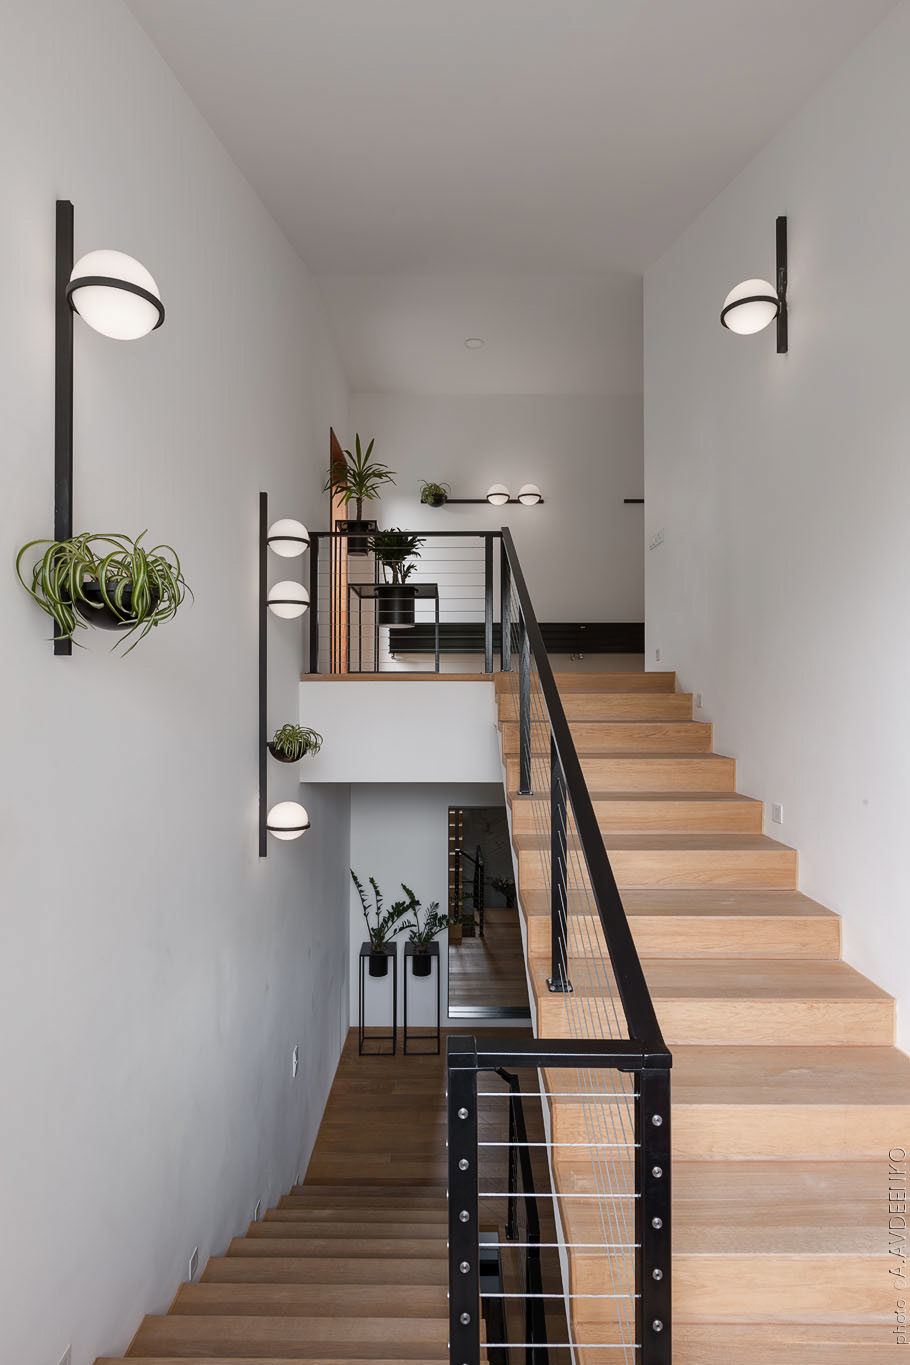 Cầu thang bằng gỗ với tay vịn kim loại sơn đen dẫn lối lên tầng trên